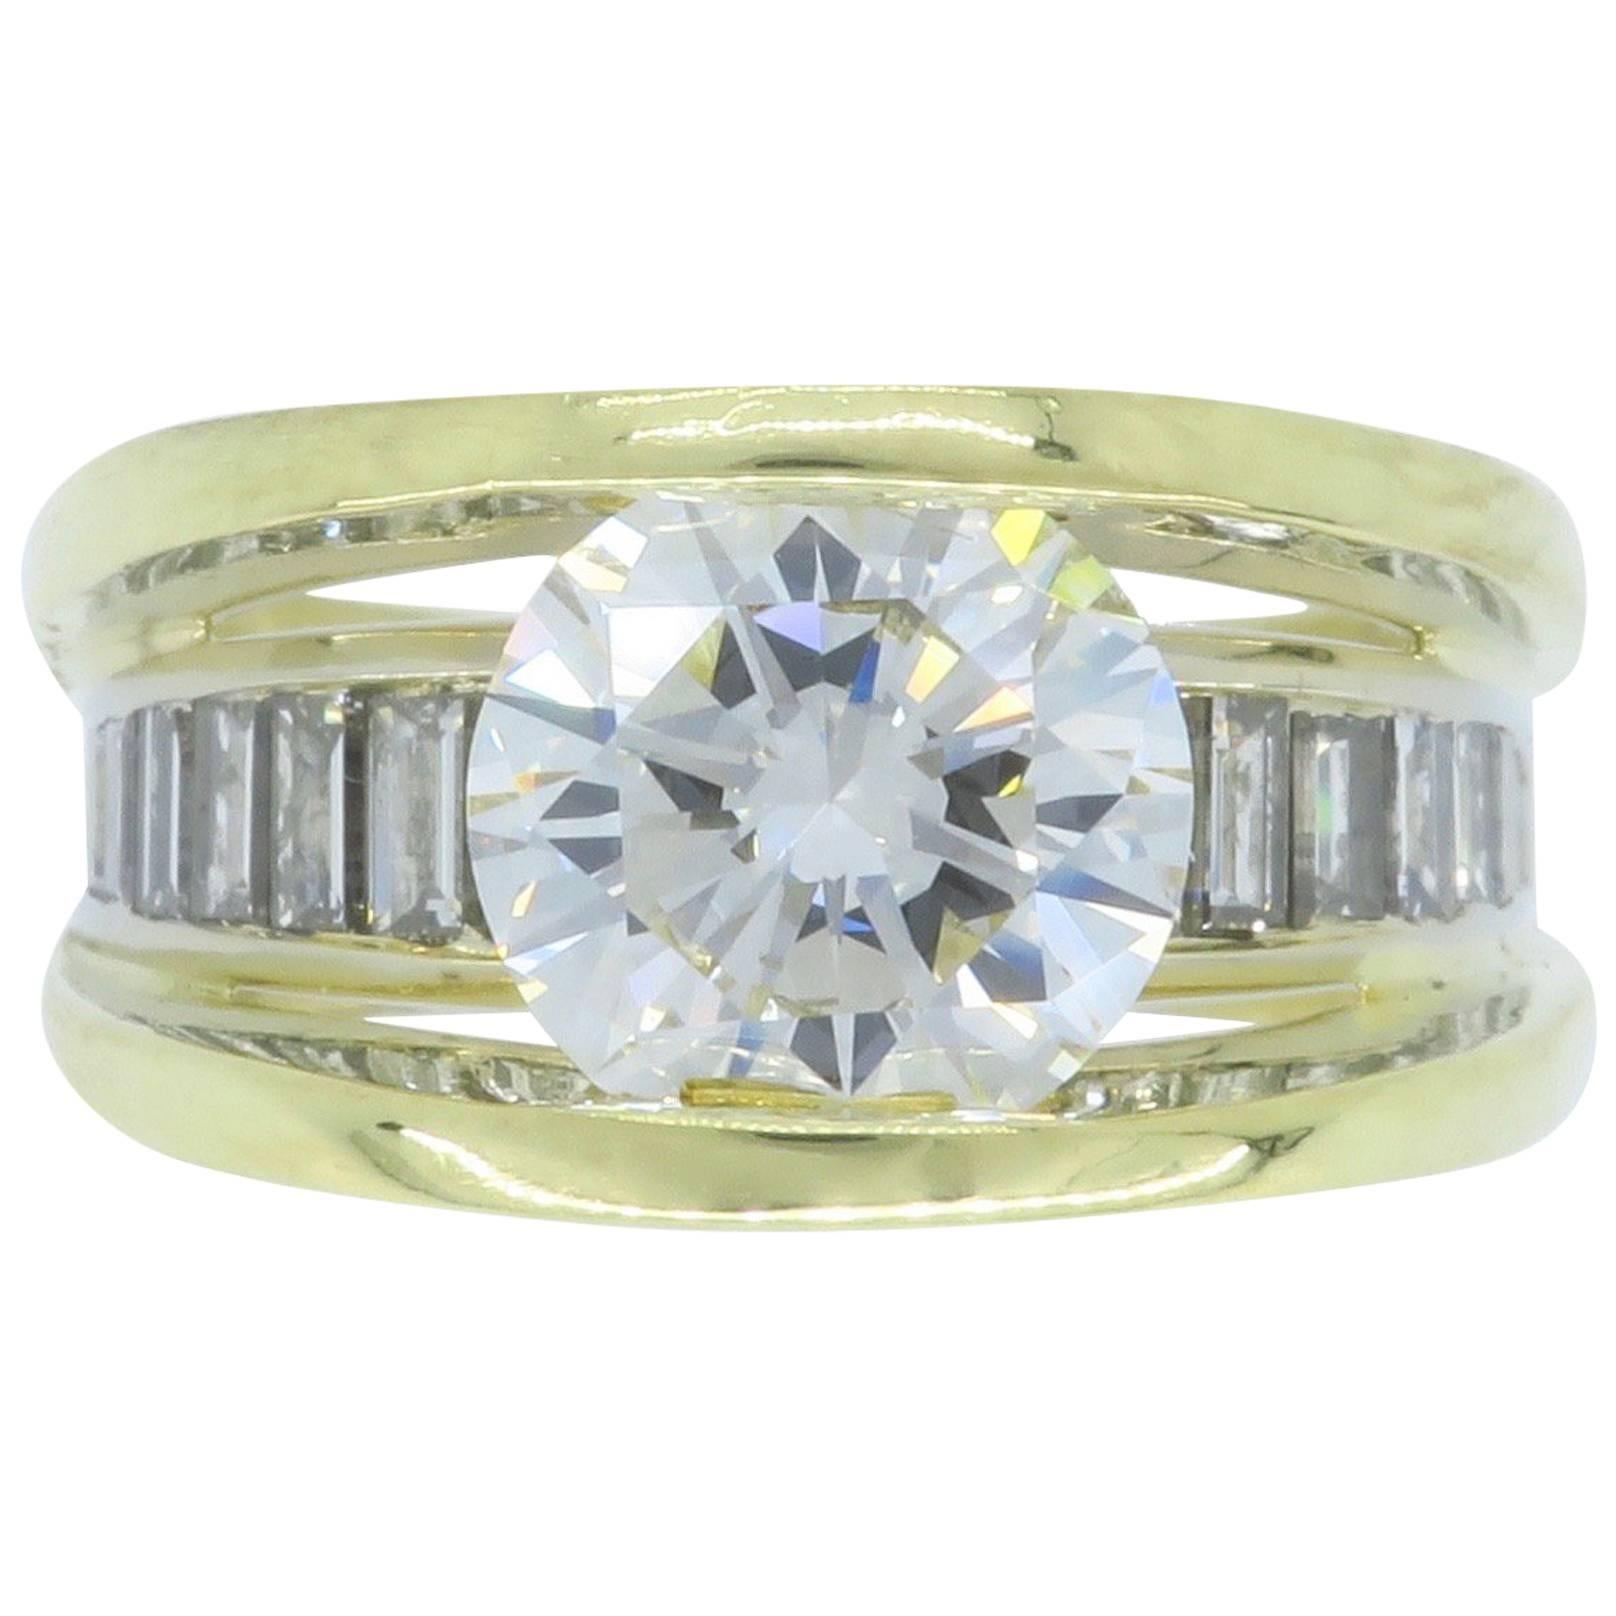 GIA Certified 3.22 Carat Diamond Engagement Ring in 18 Karat Gold